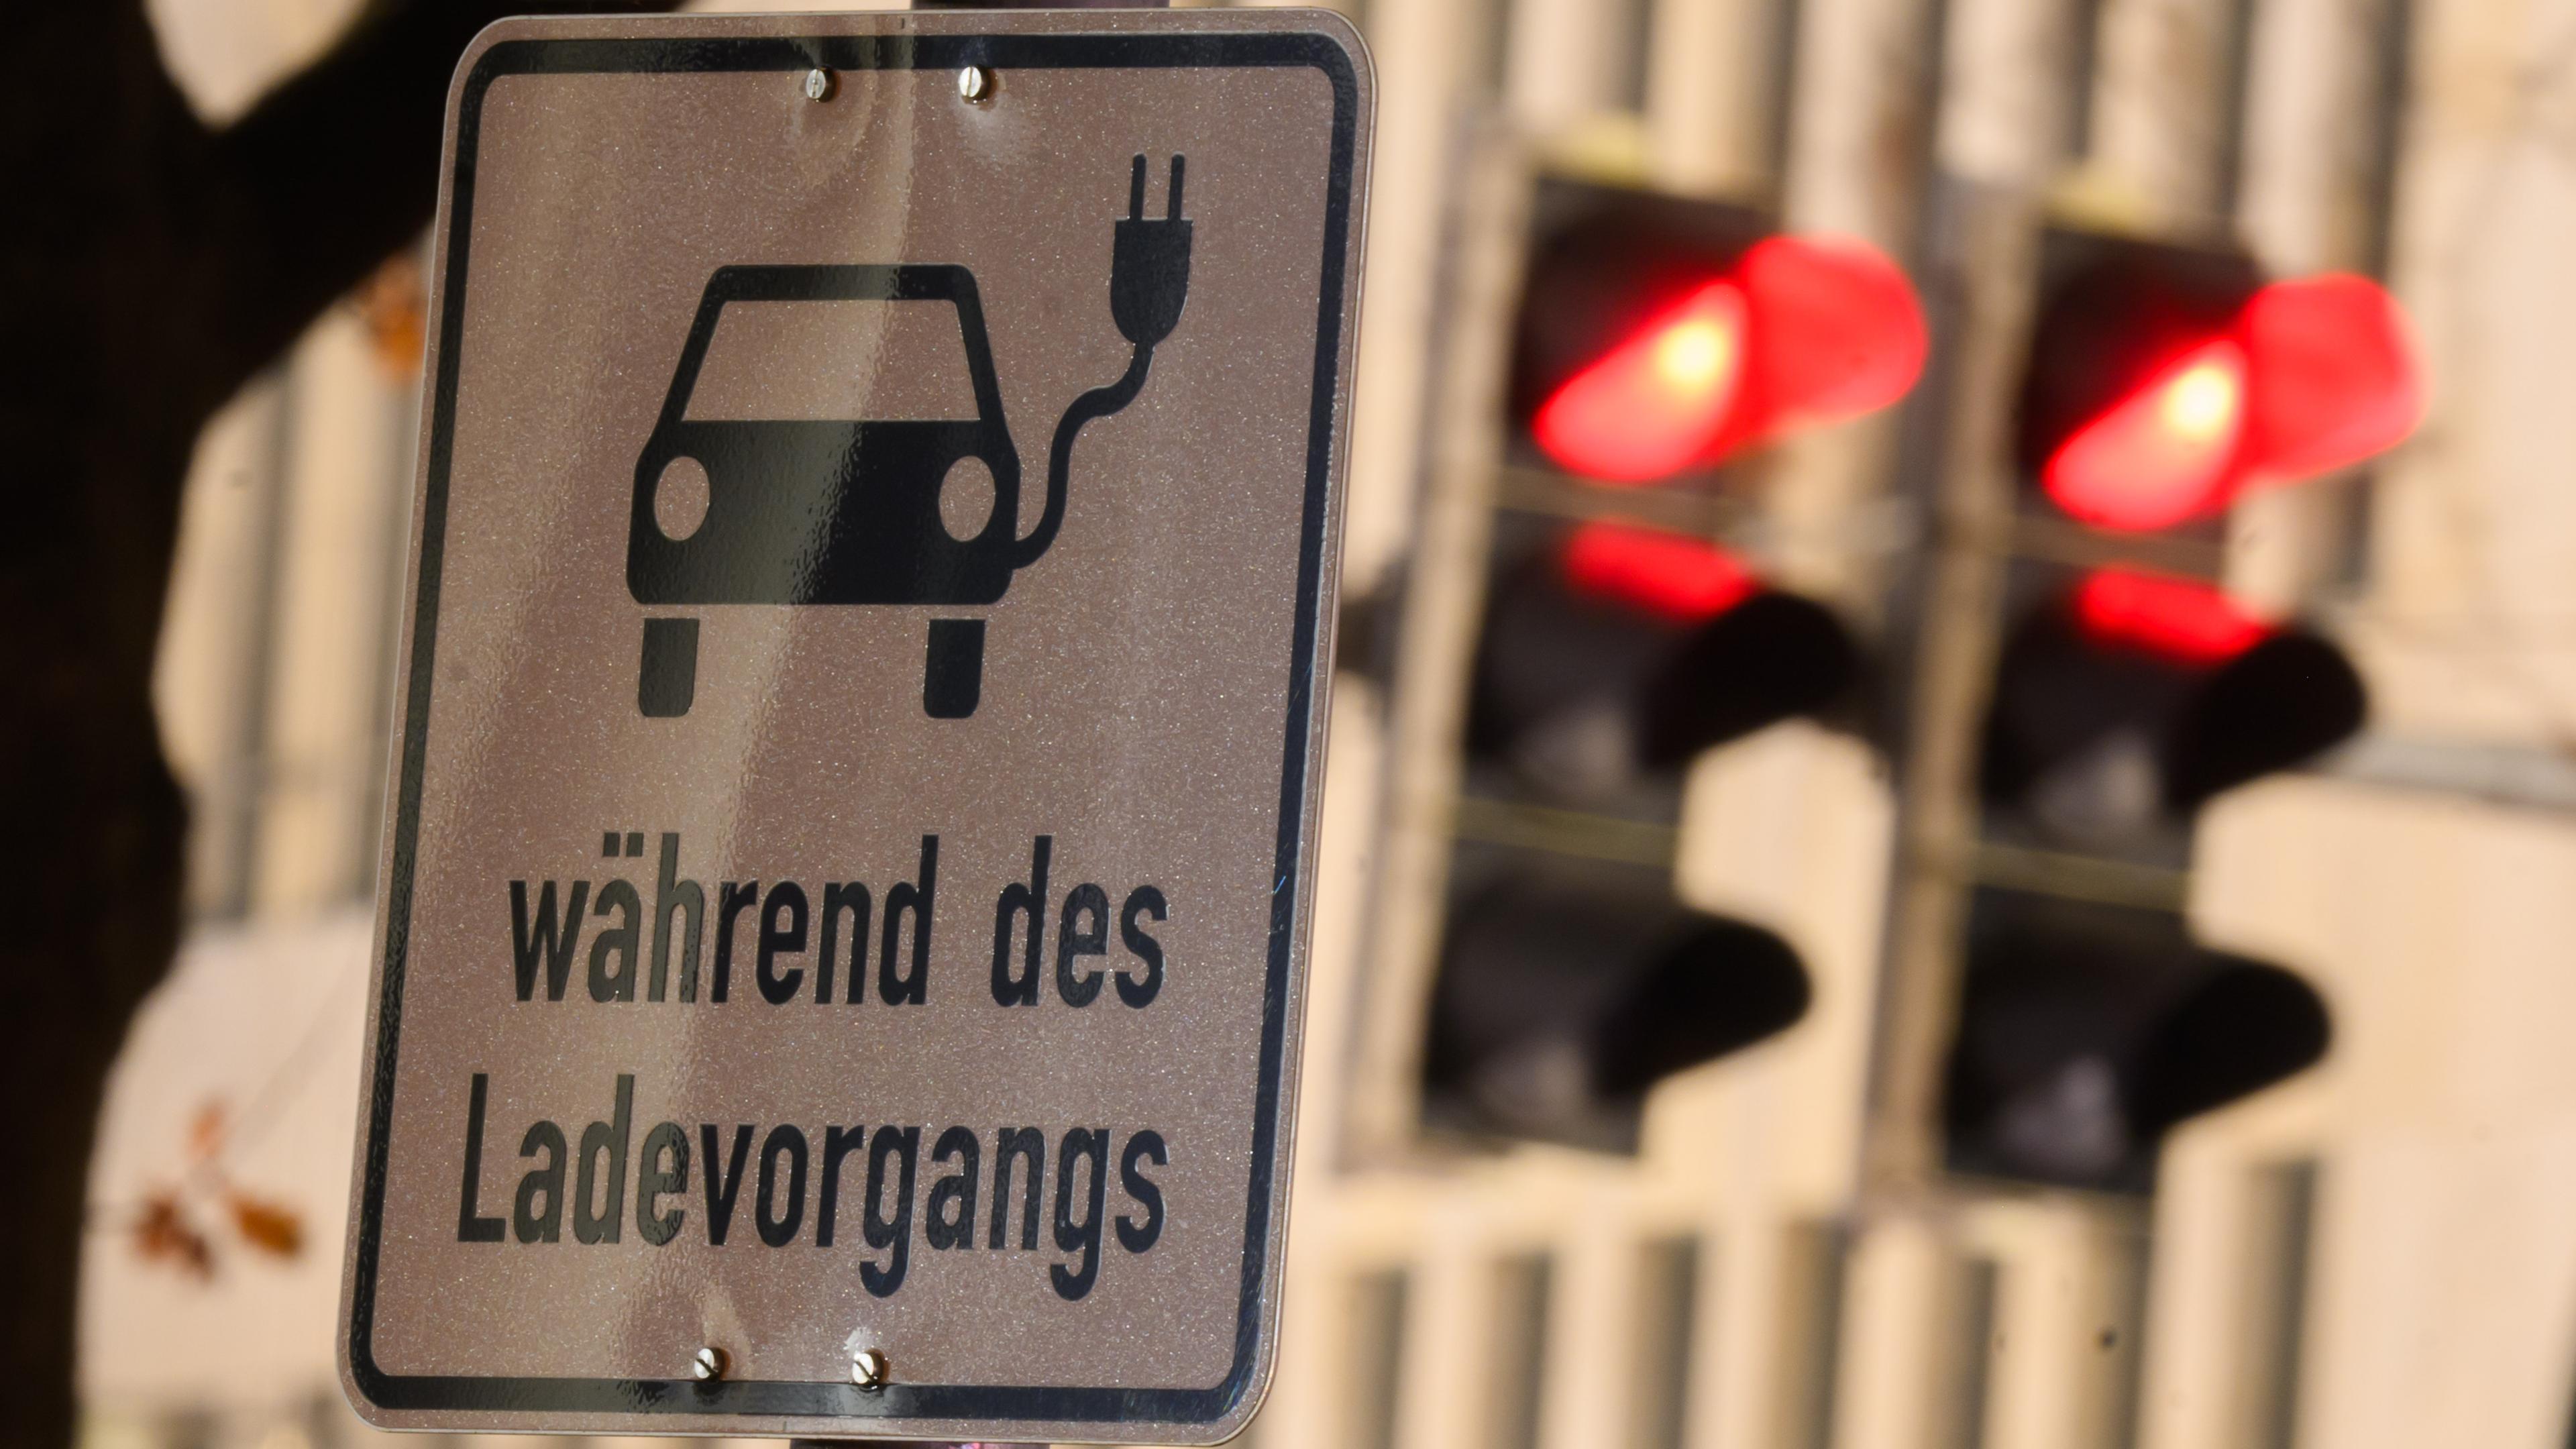 19.12.2023, Niedersachsen, Hannover: Ein Schild mit einem Symbol für ein Elektroauto und den Schriftzug ·während des Ladevorgangs· markiert einen Parkplatz an einer Ladesäule.